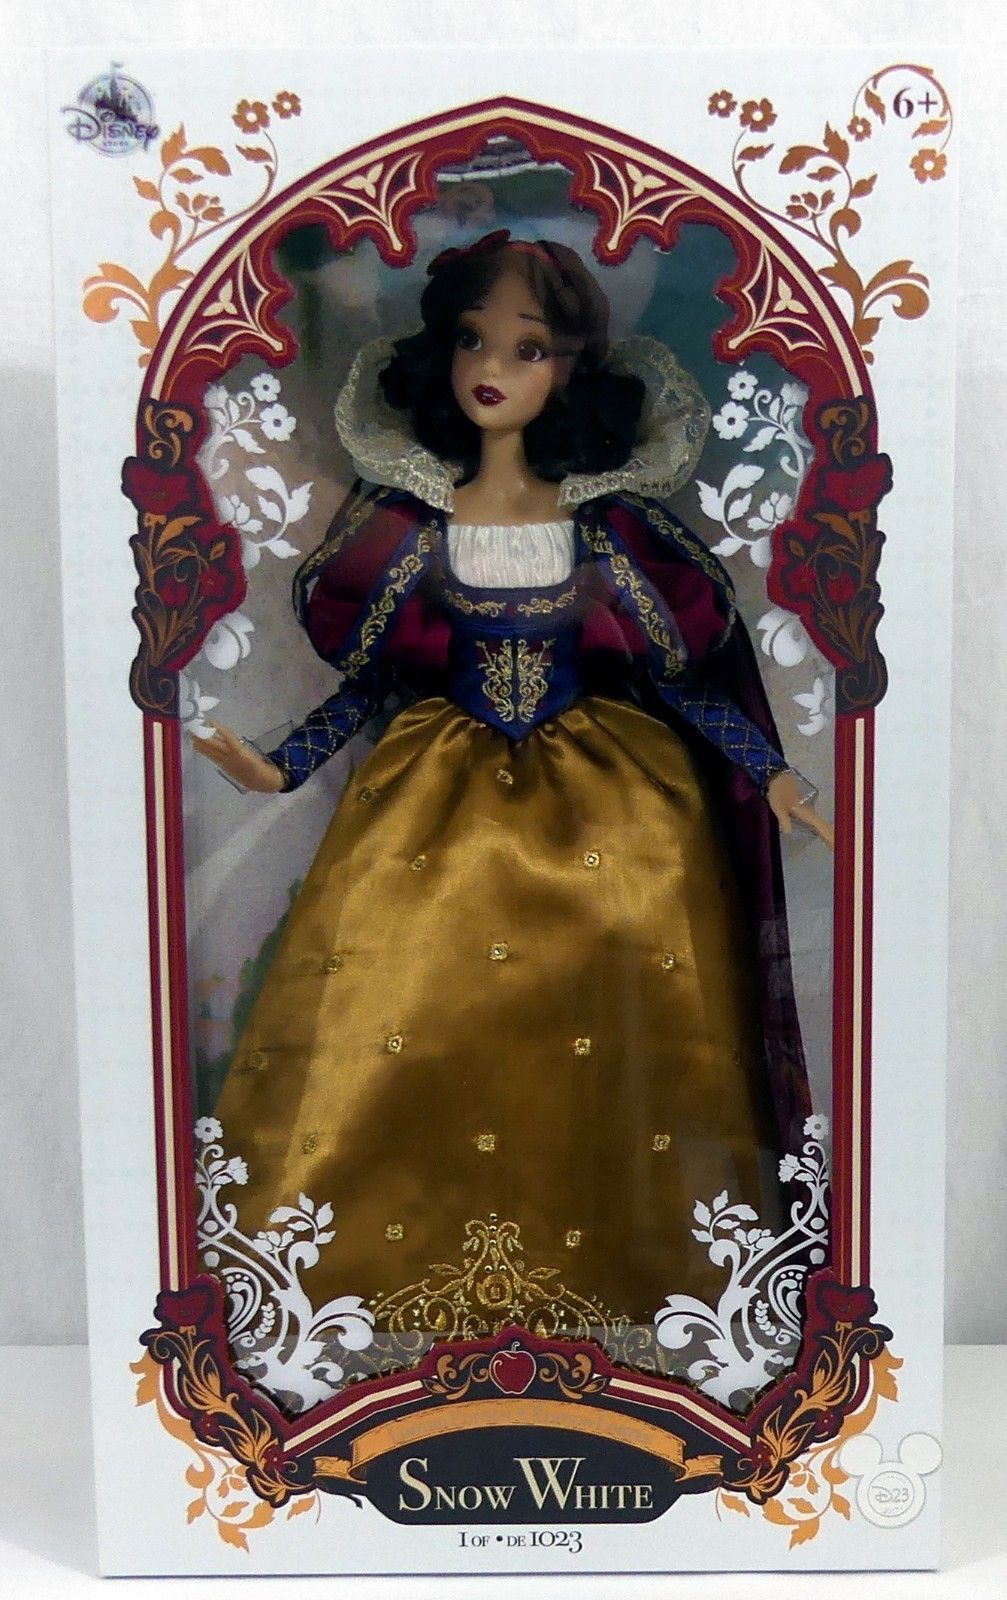 Les poupées limitées du Disney Store